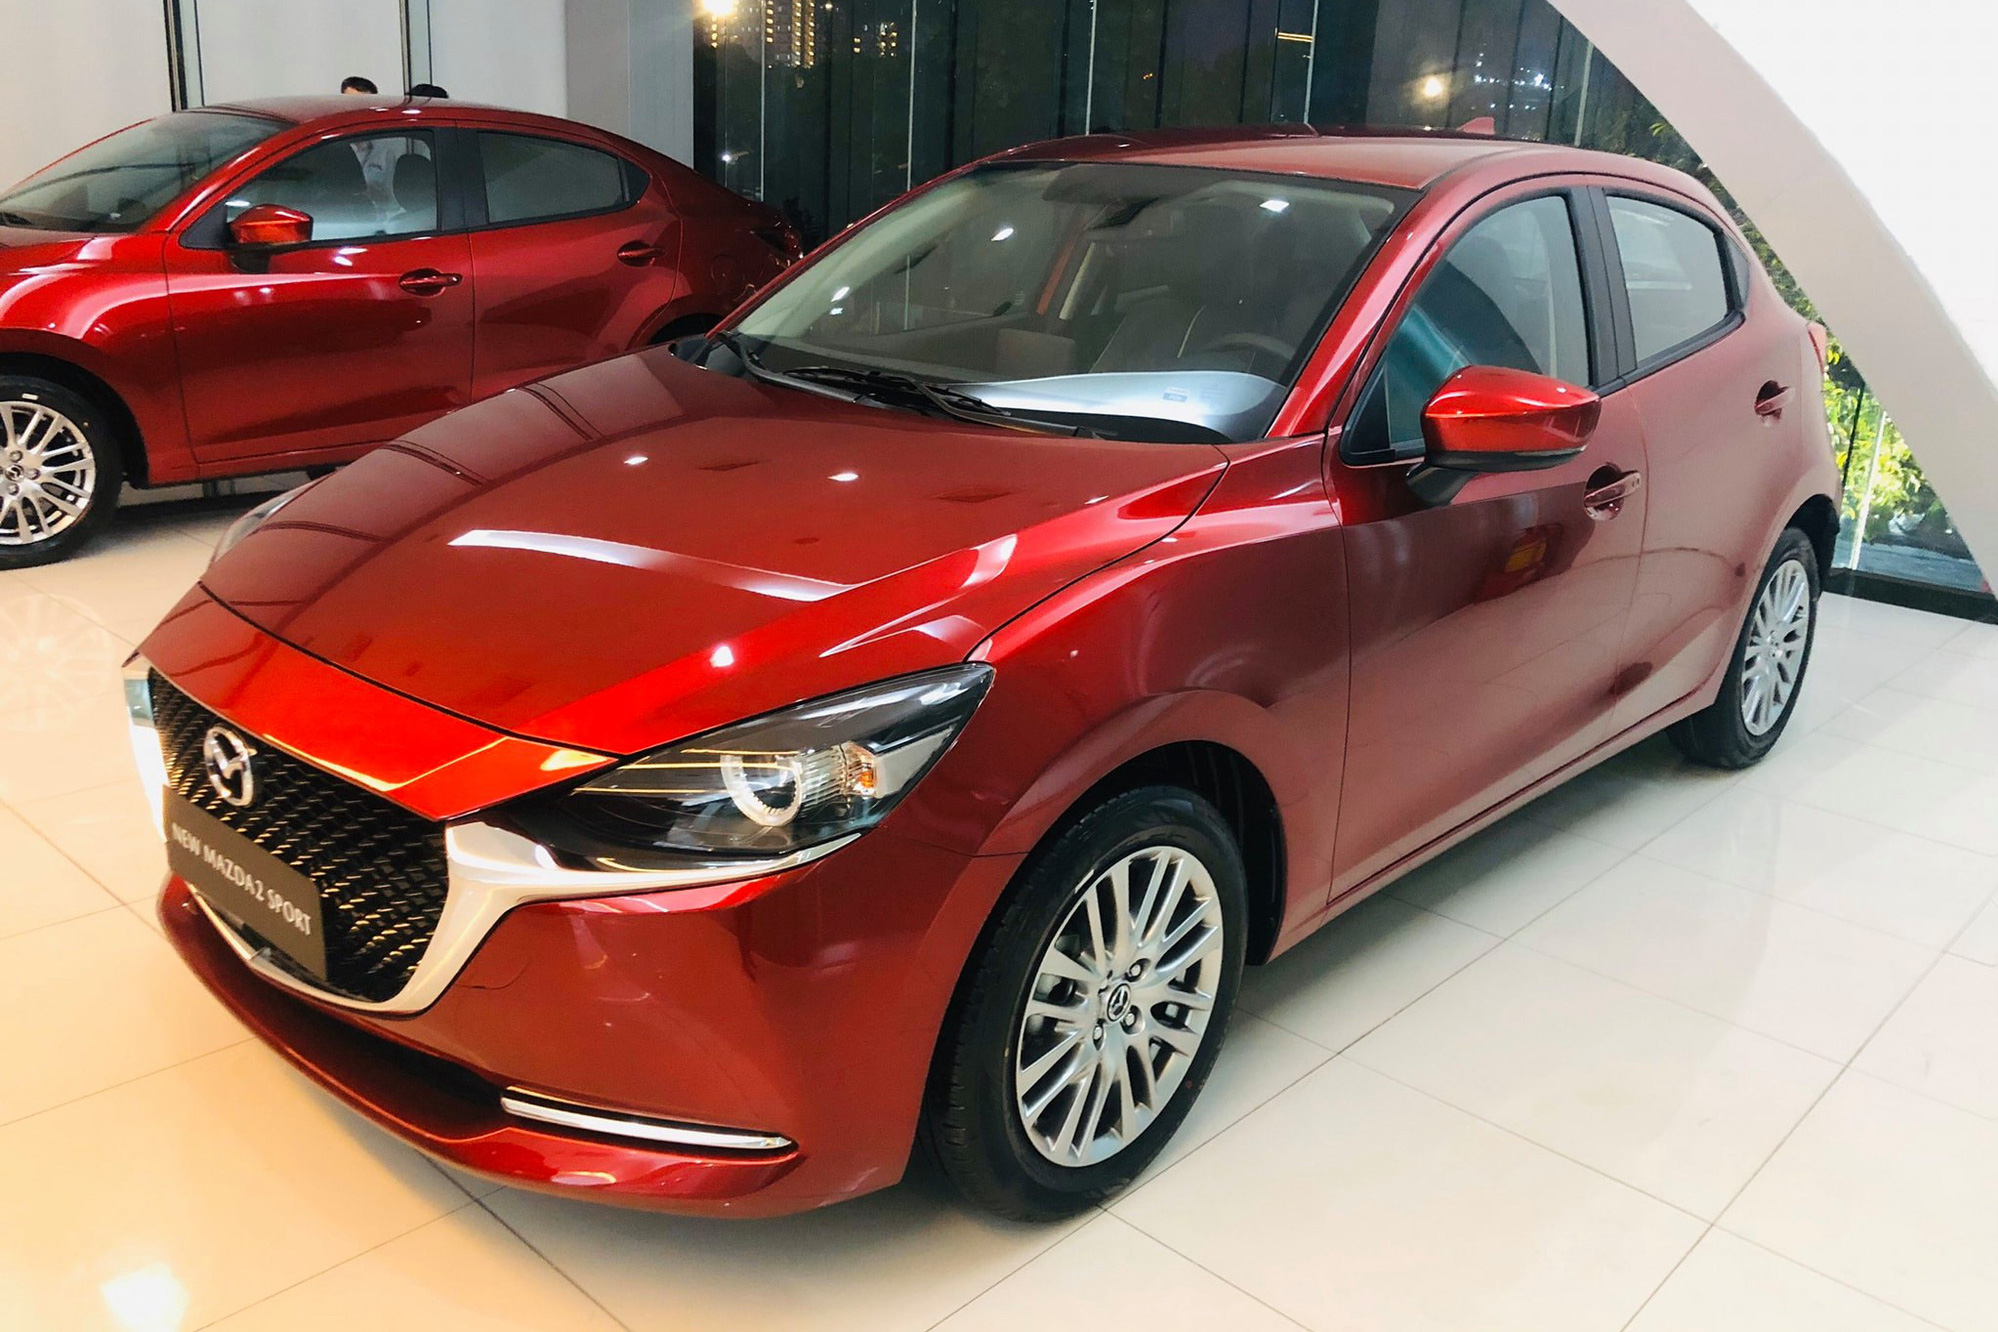 Mazda2 2020 chính thức ra mắt tại Việt Nam: Cạnh tranh Toyota Vios, nhưng công nghệ như CX-8